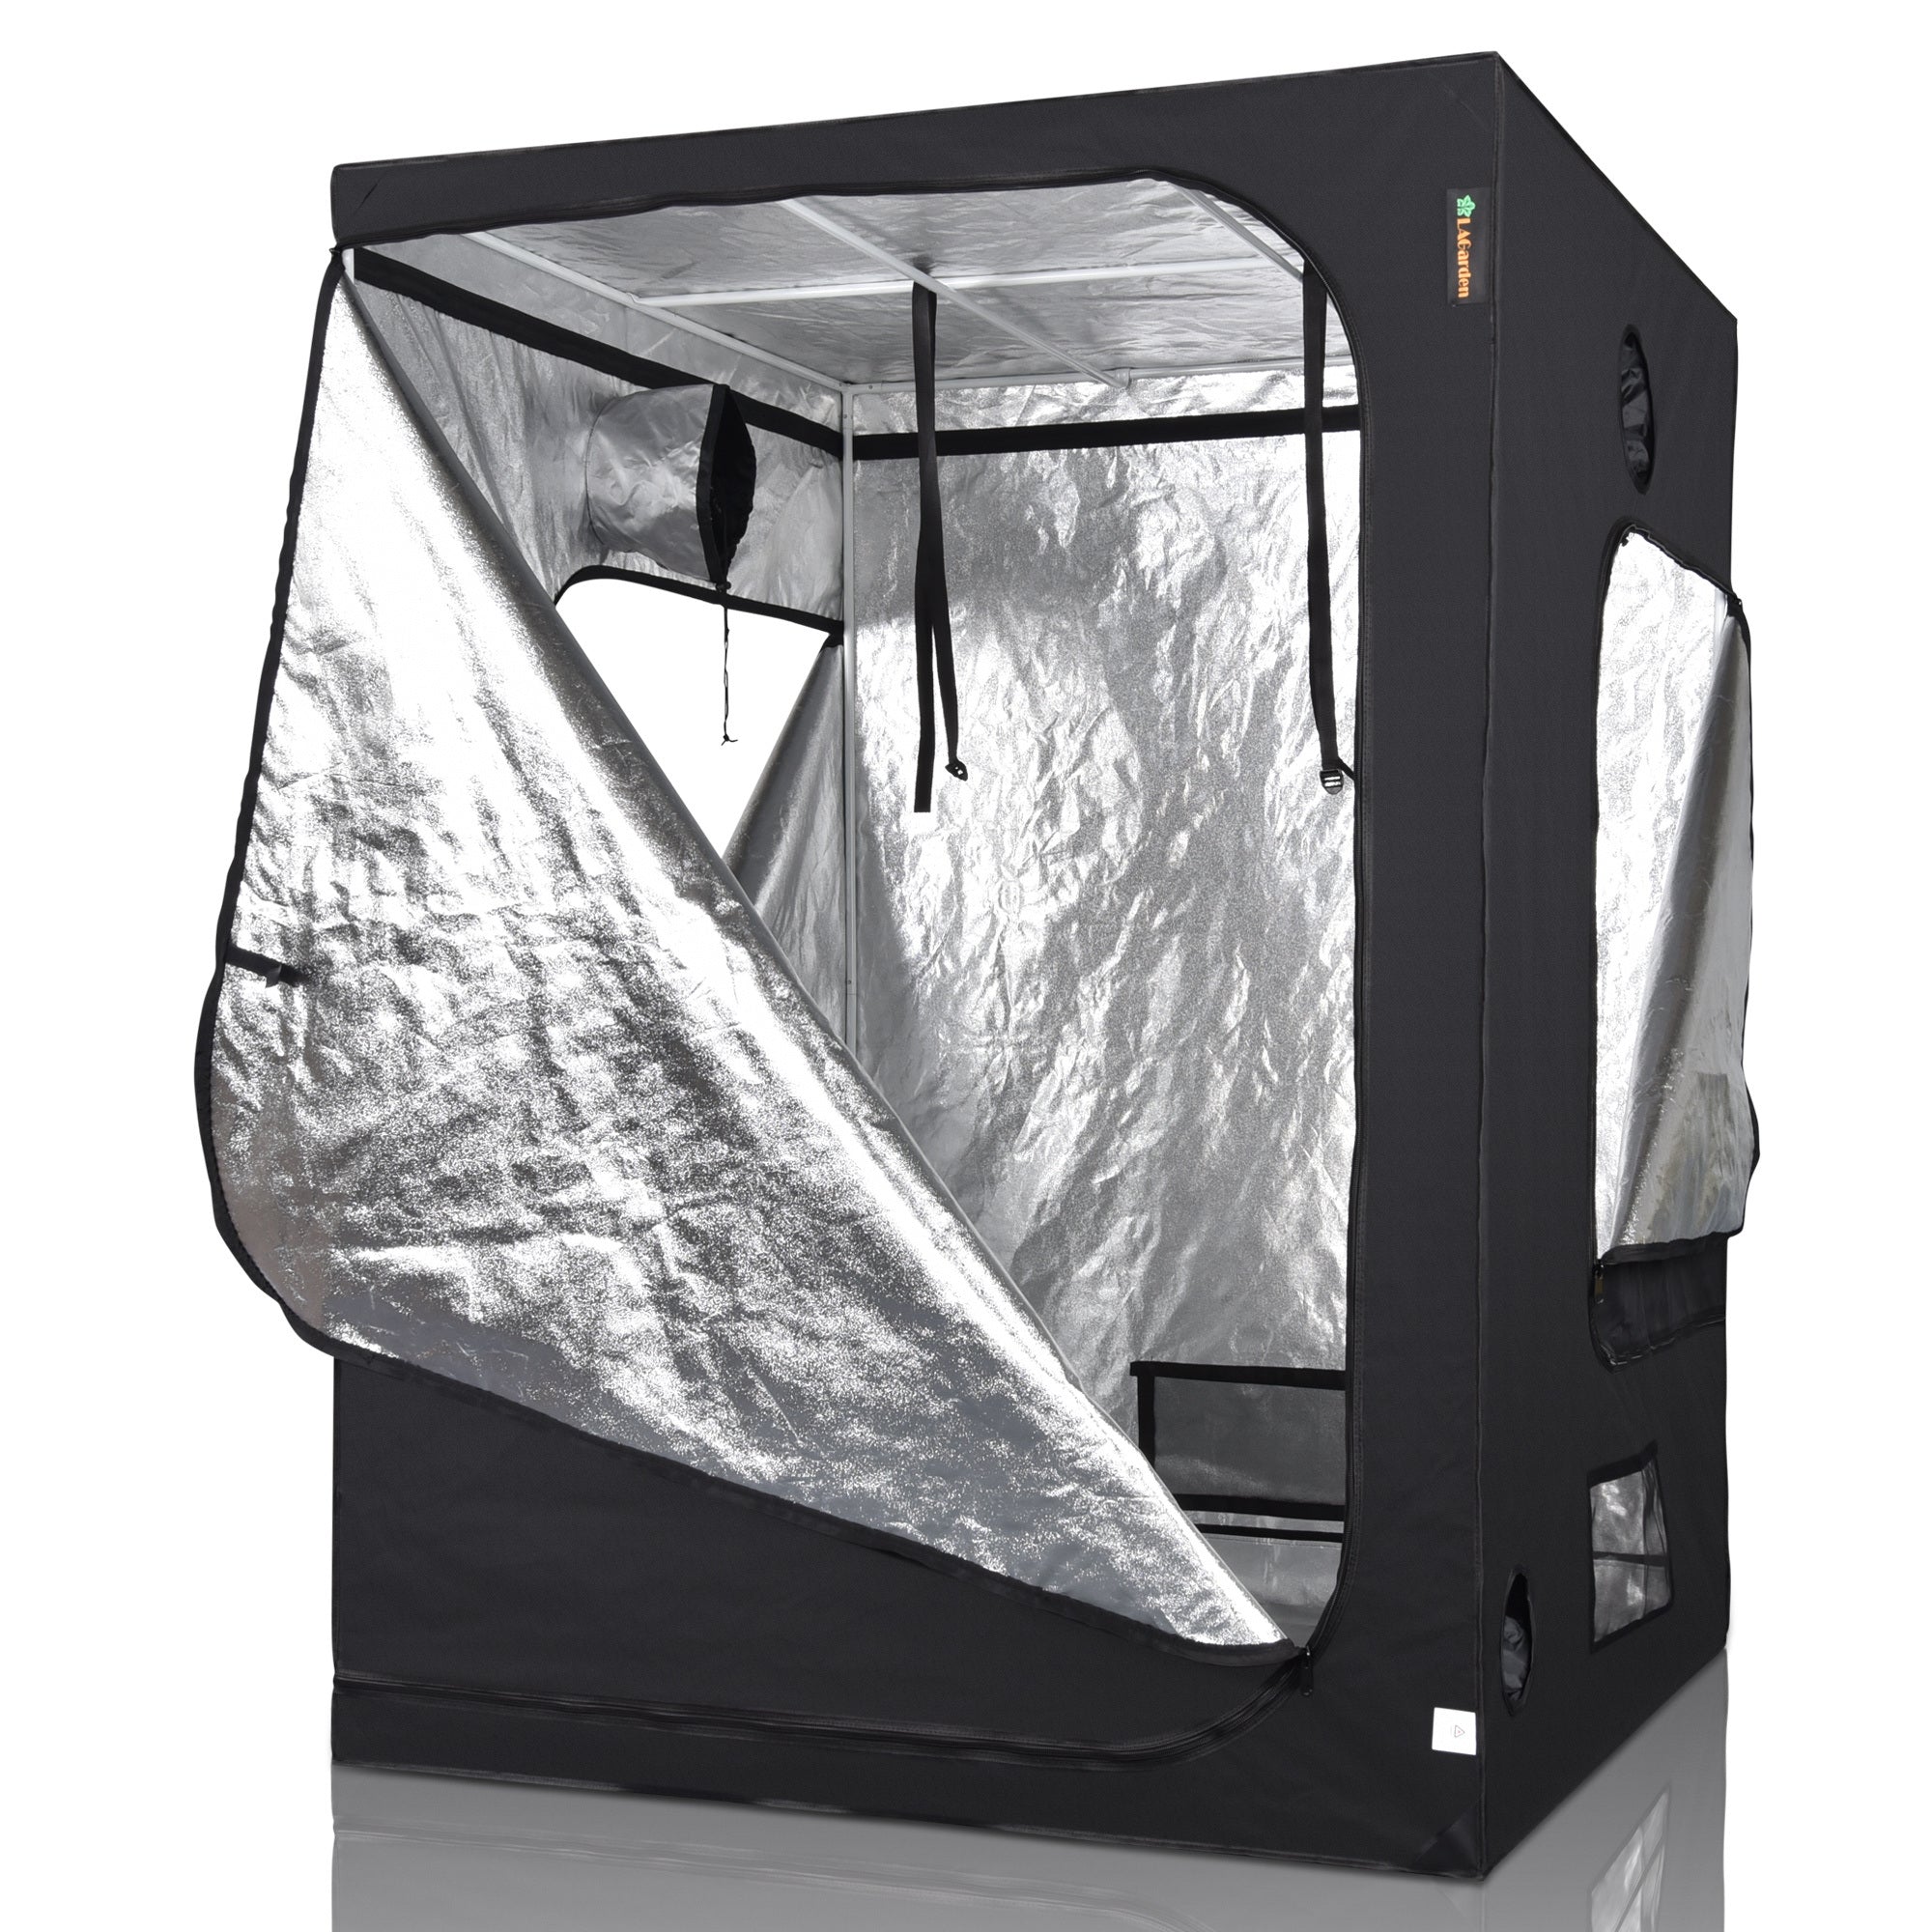 60x60x78in Hydroponics Grow Tent Window